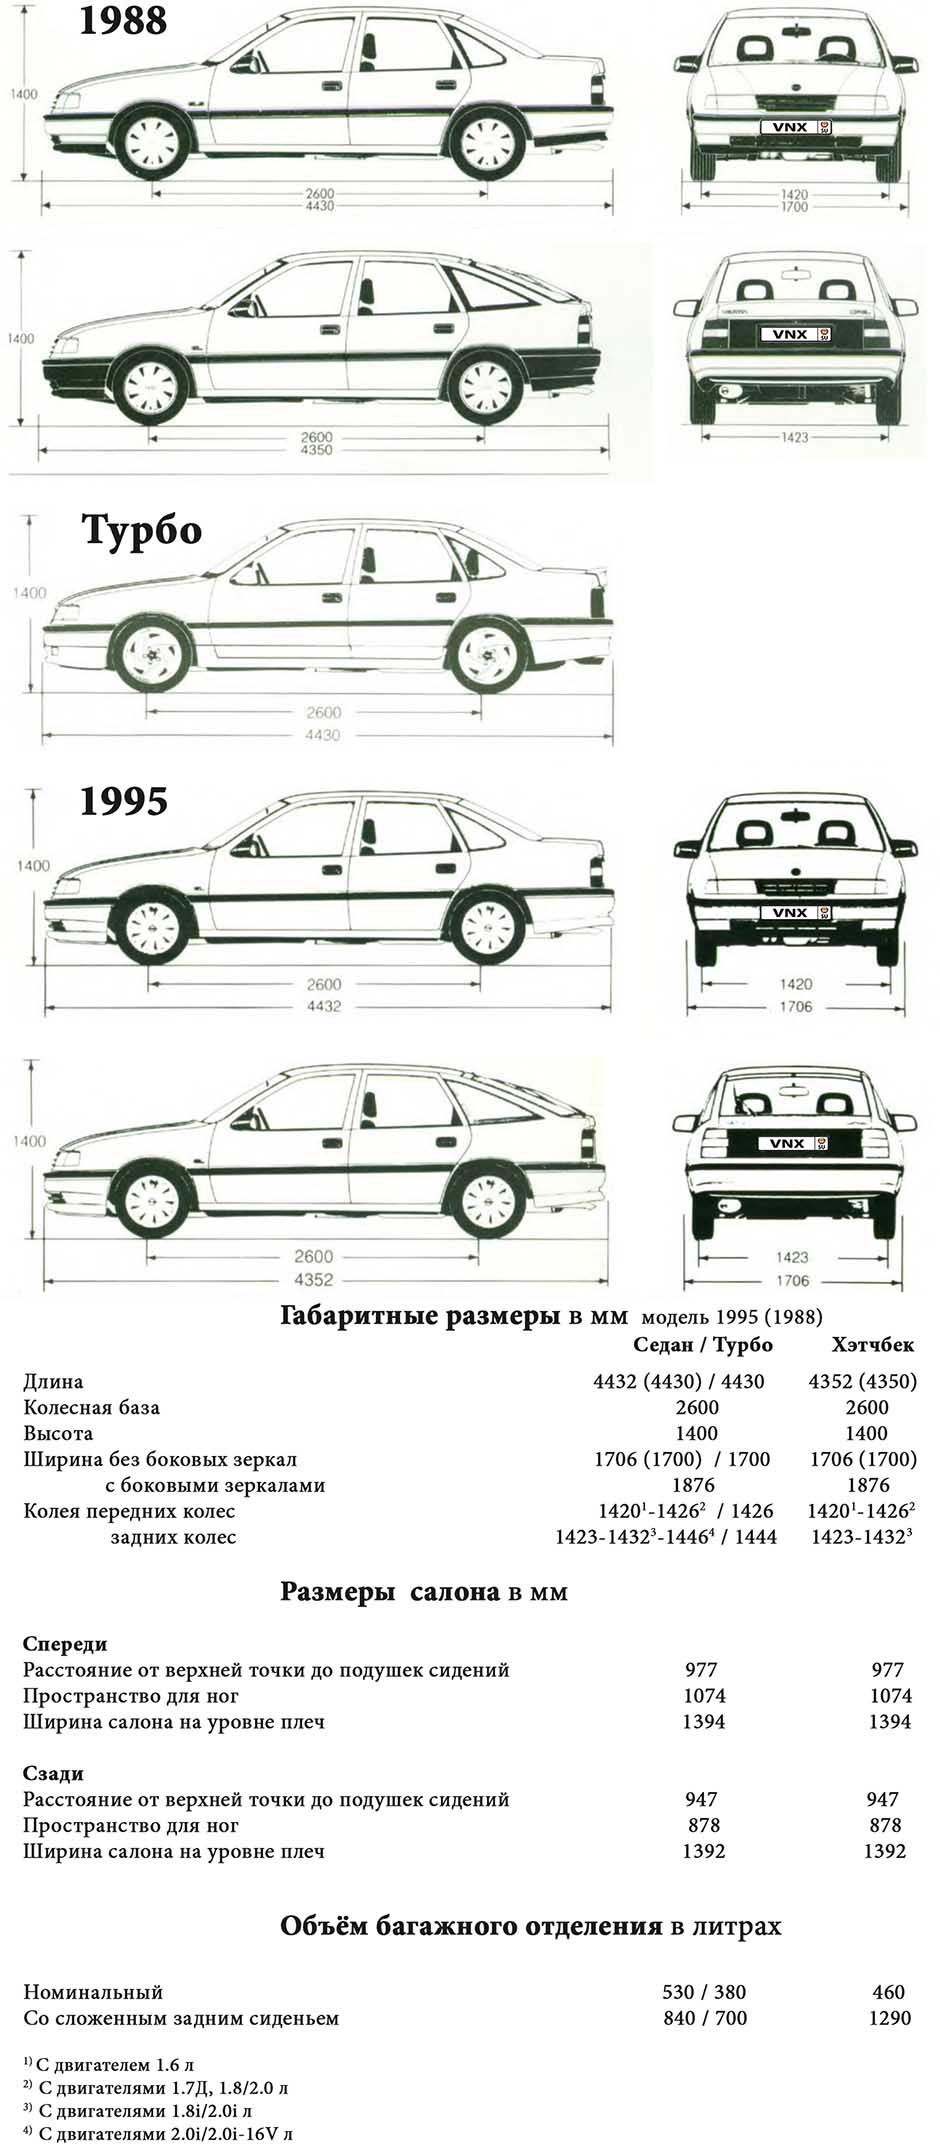 Габаритные размеры Опель Вектра / Воксхол Кавалер 1988-1995 (dimensions Opel Vectra A)